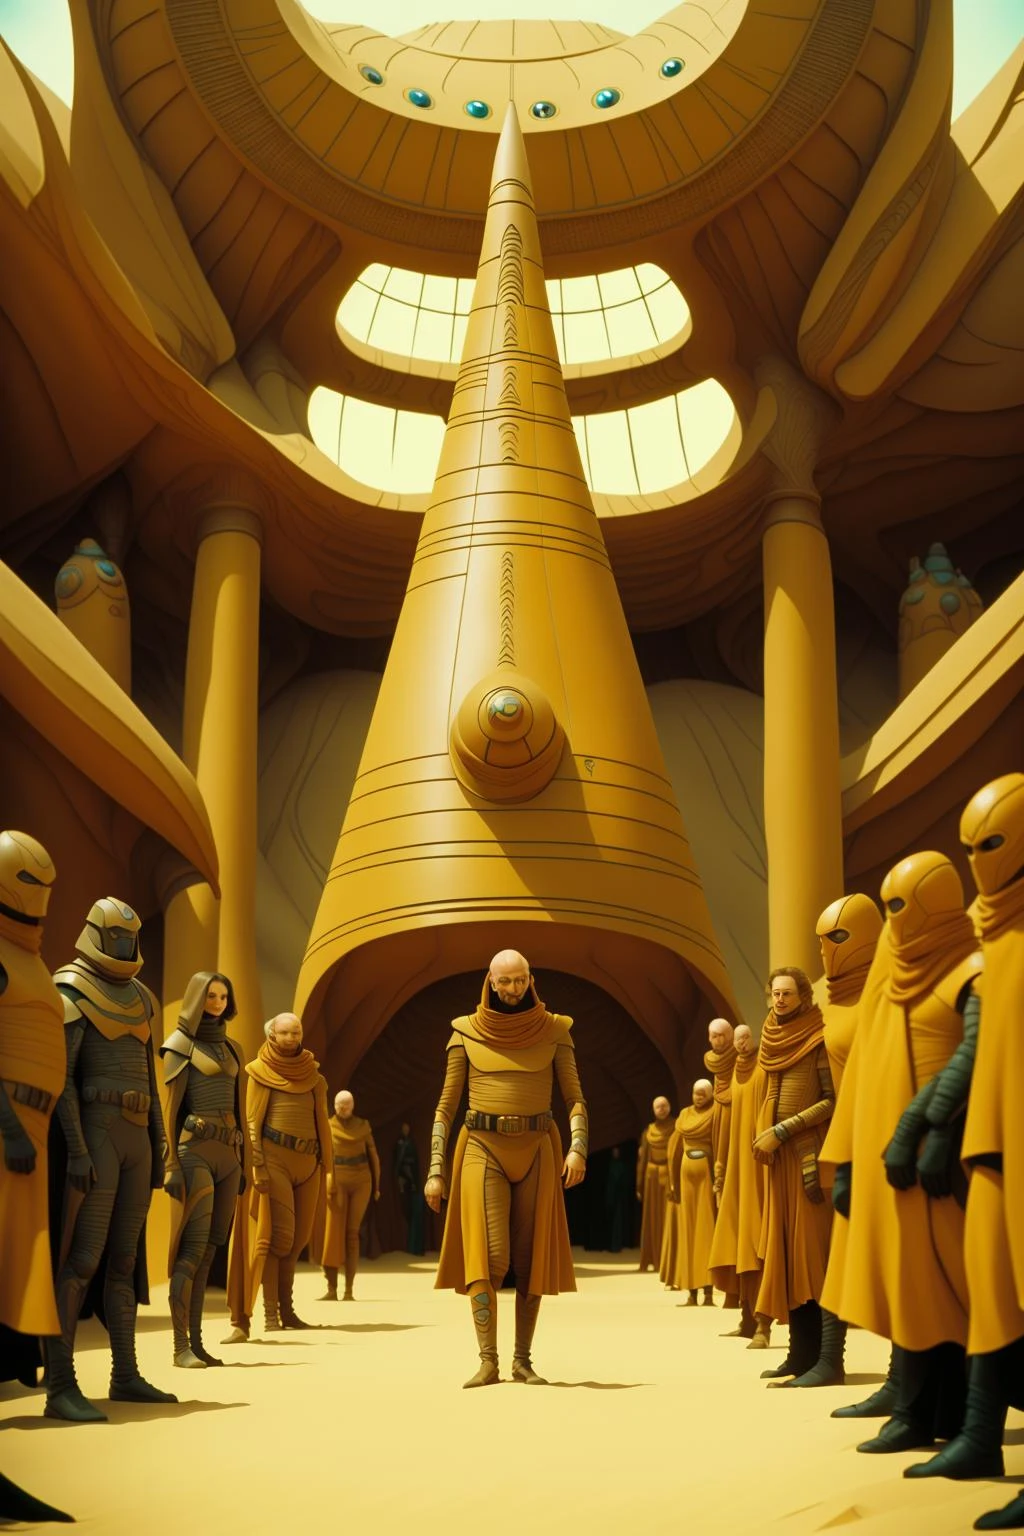 映画「デューン」の登場人物, a man in a yellow suit 立っている in a room with a giant red cone , 1人の男の子, 立っている, 男性フォーカス, 軍隊, マスク, 何, シュール , サイエンスフィクション, 大勢の人が通りを歩いている